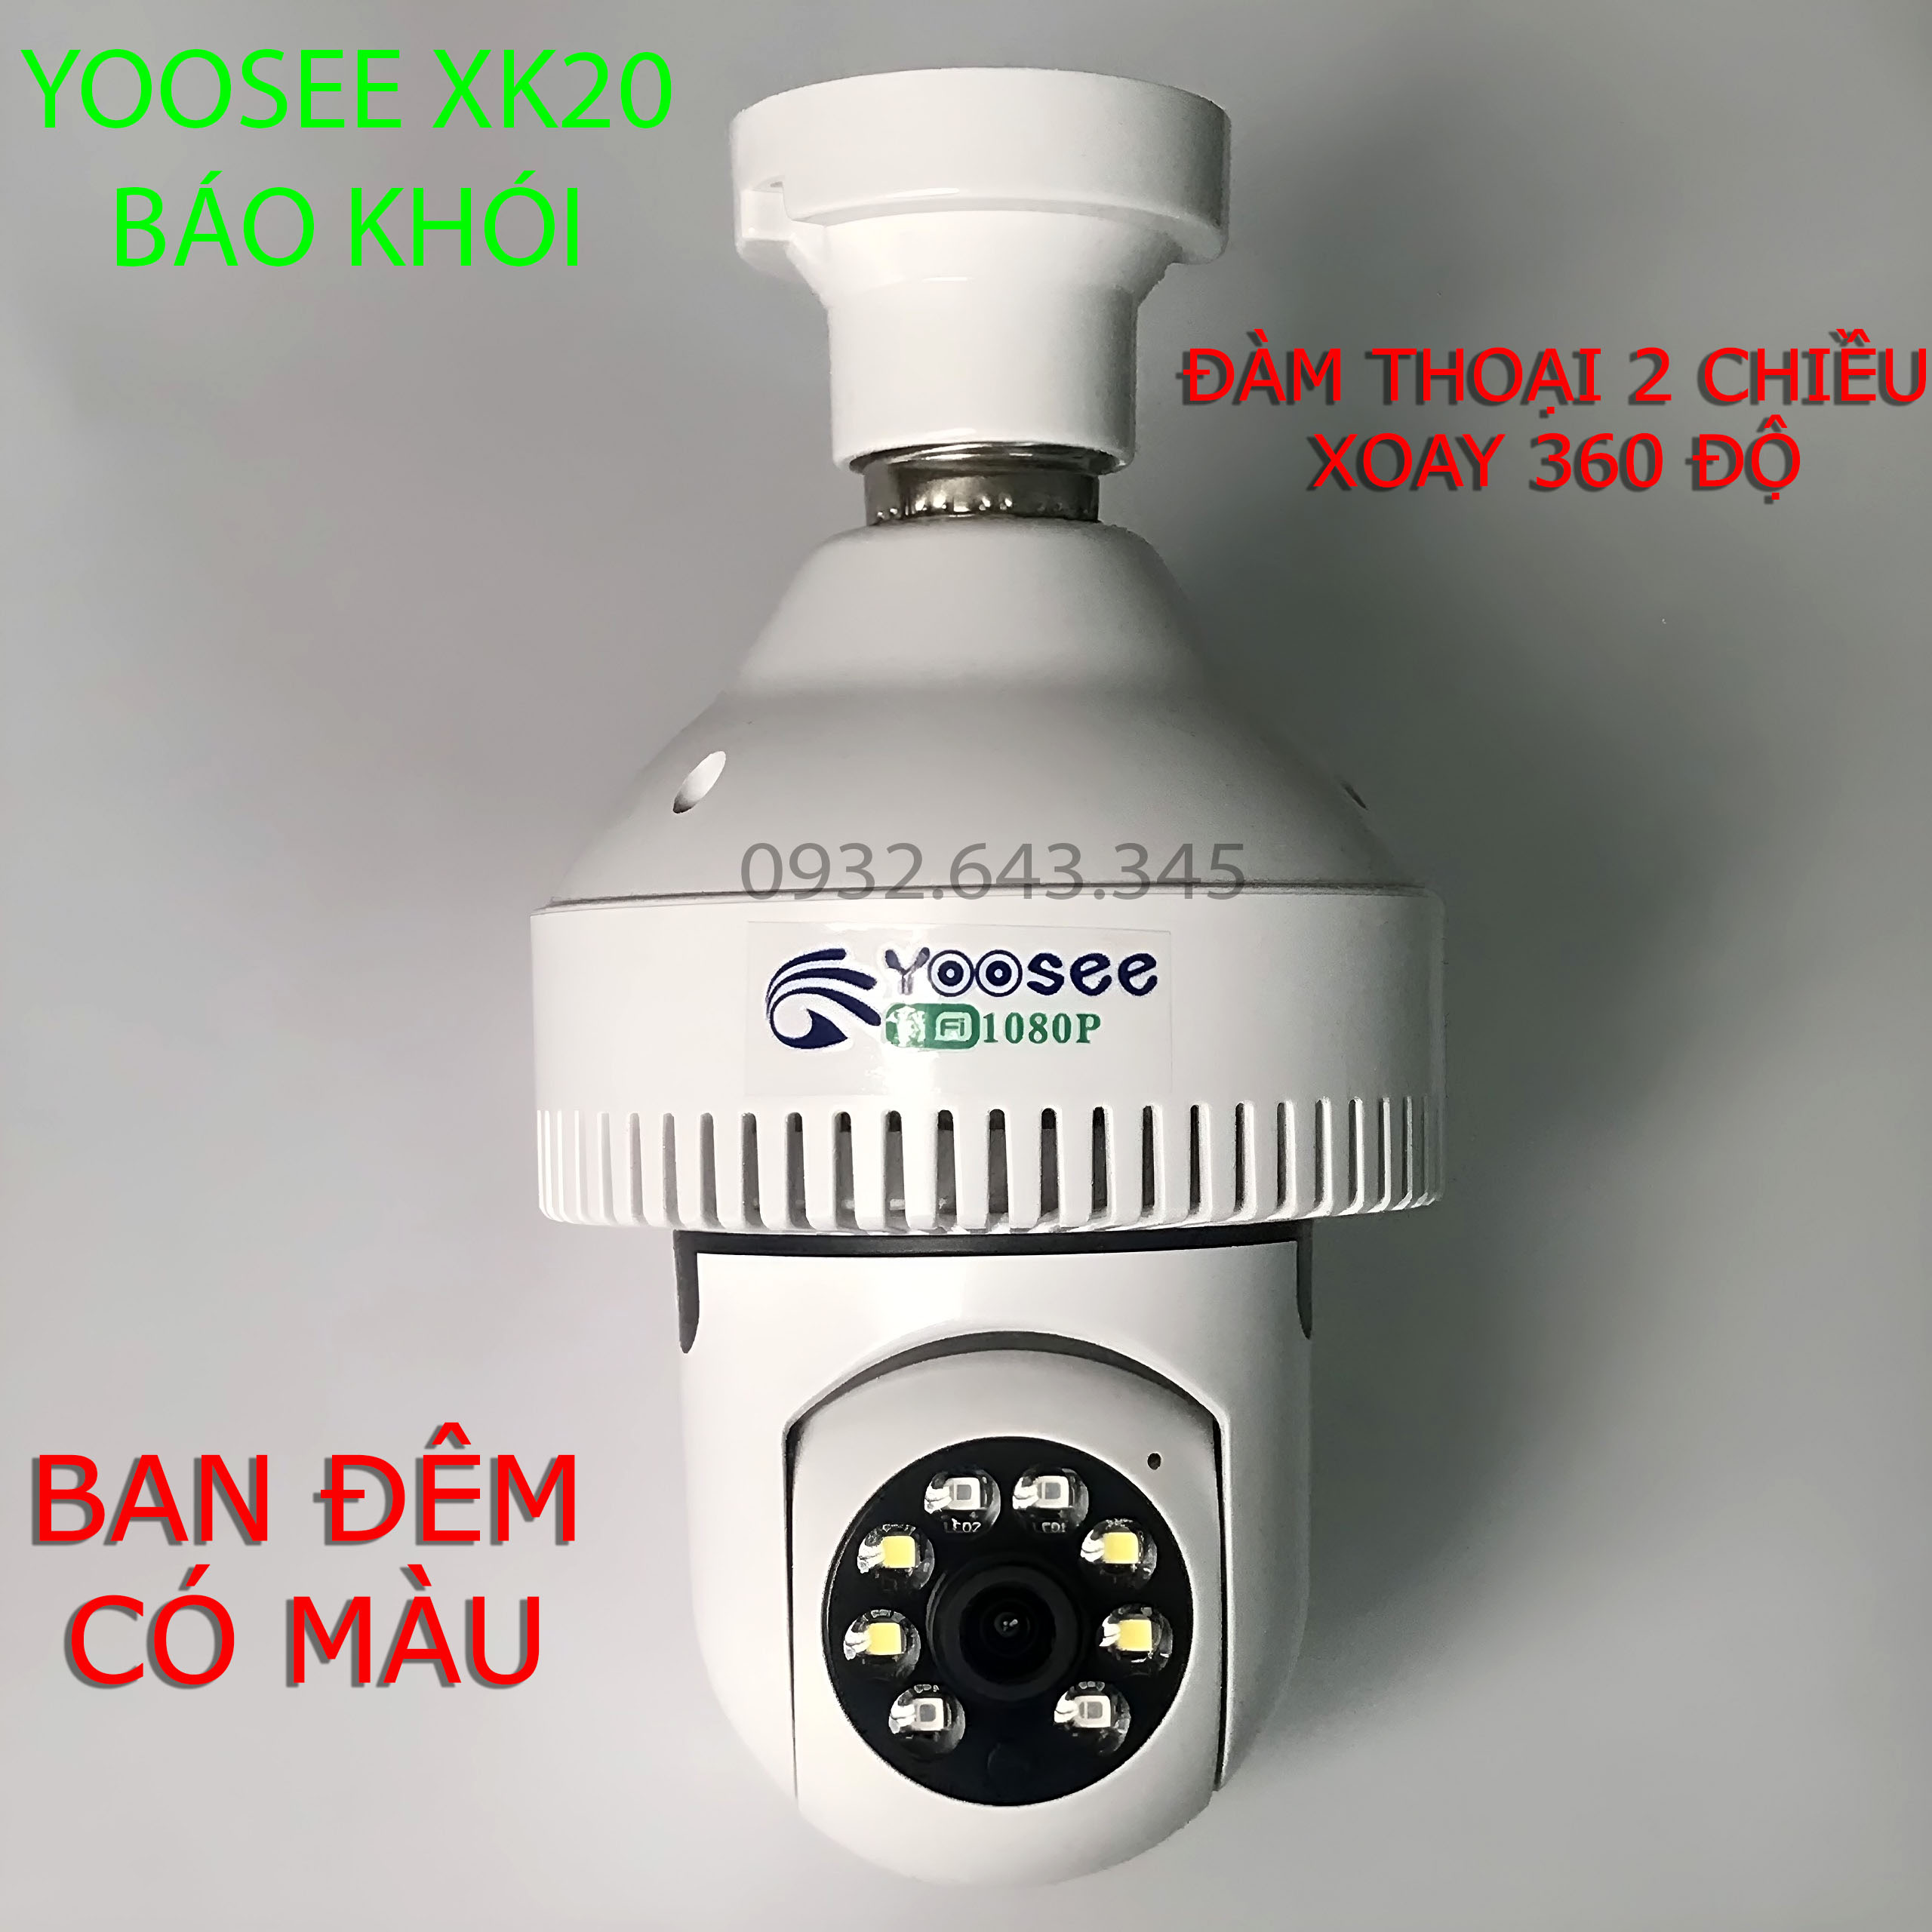 Camera WiFi Bóng Đèn Tích Hợp Báo Khói Yoosee XK20 Full HD 1080P - Xoay 360 độ, Ban đêm có màu - Hàng Chính Hãng